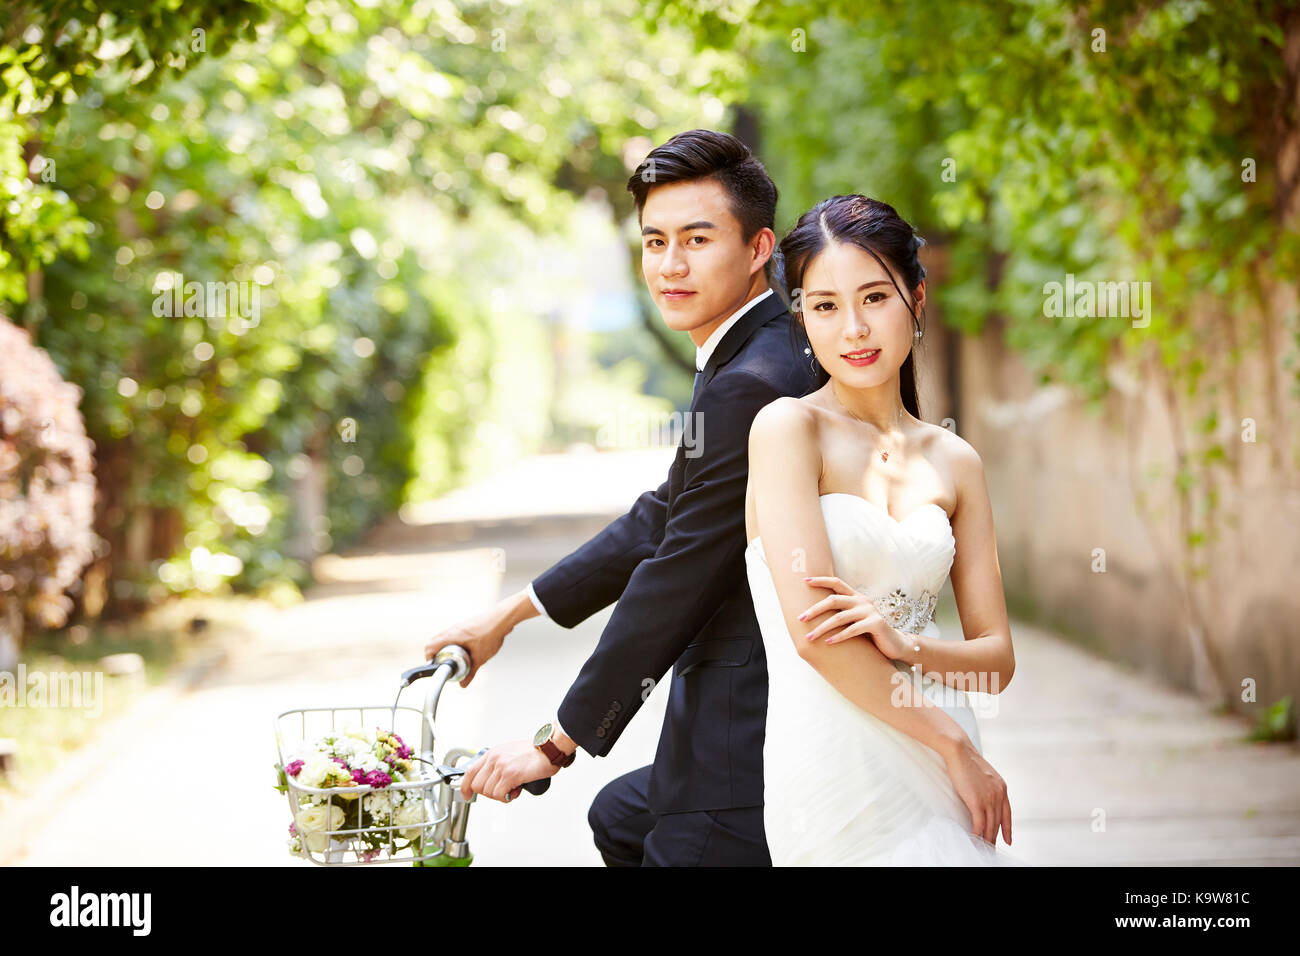 Neu - Mi asiatische Braut und Bräutigam mit einem Fahrrad. Stockfoto